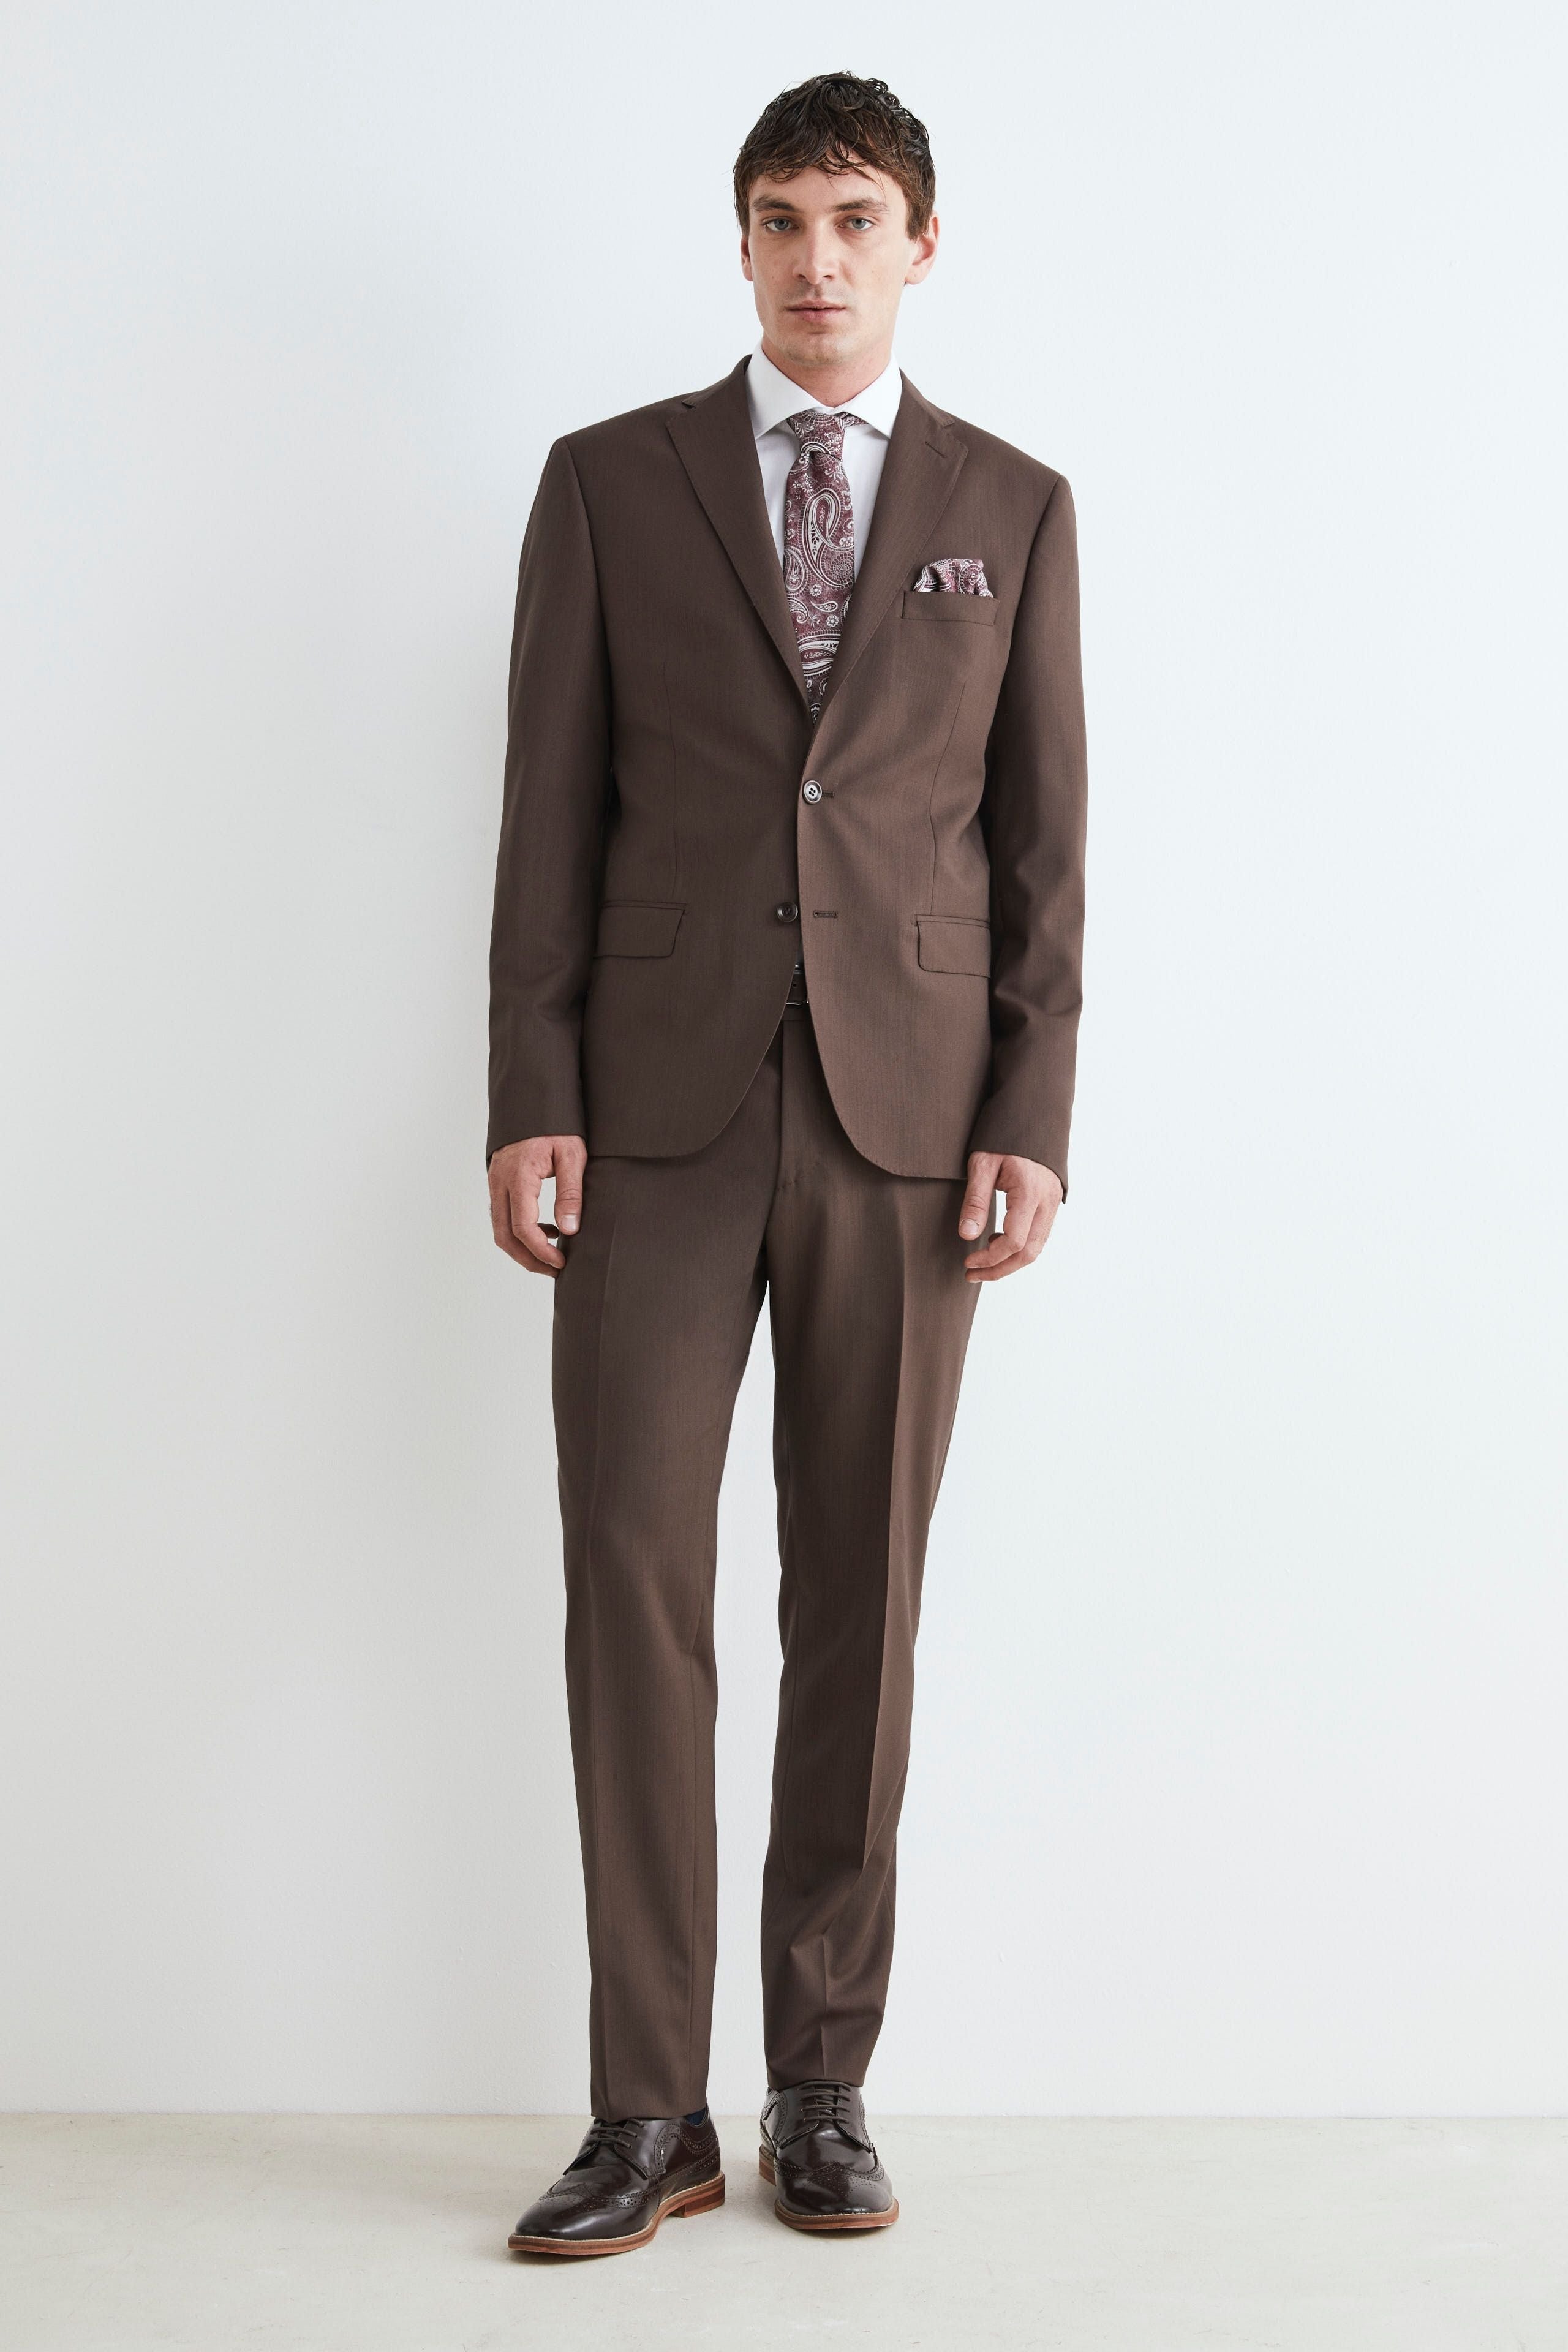 Men’s formal Suit - brown